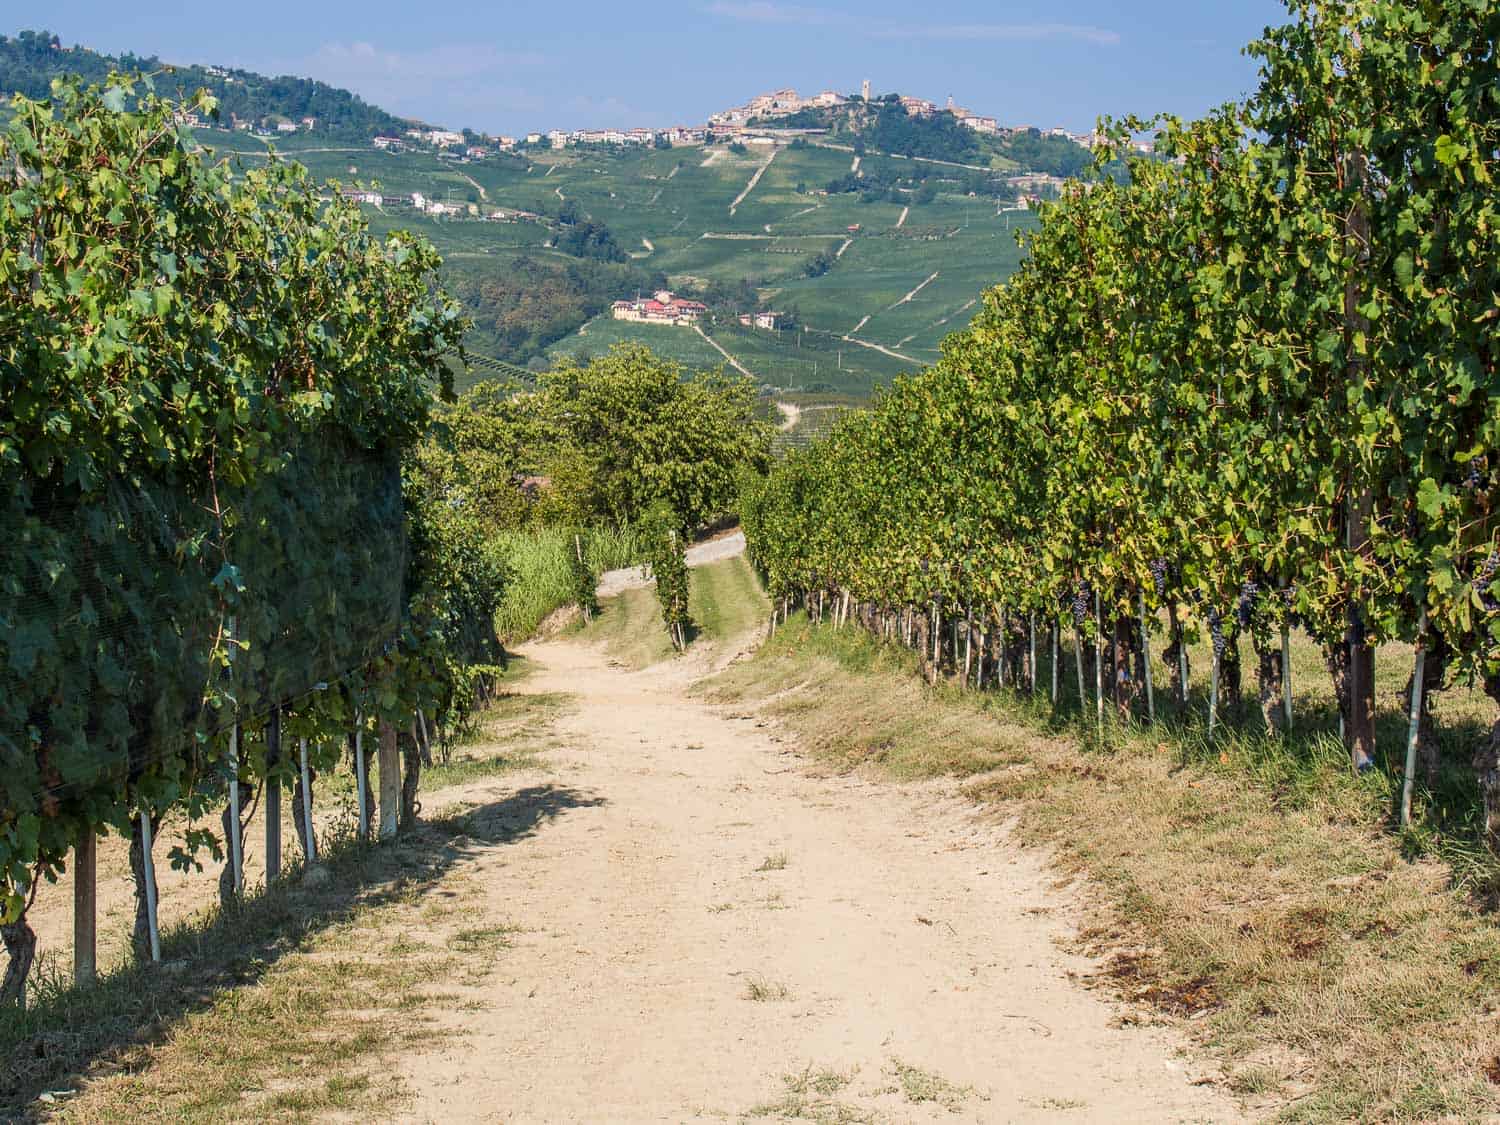 Vineyard hiking trail to Barolo from Castiglione Falletto in Piemonte, Italy